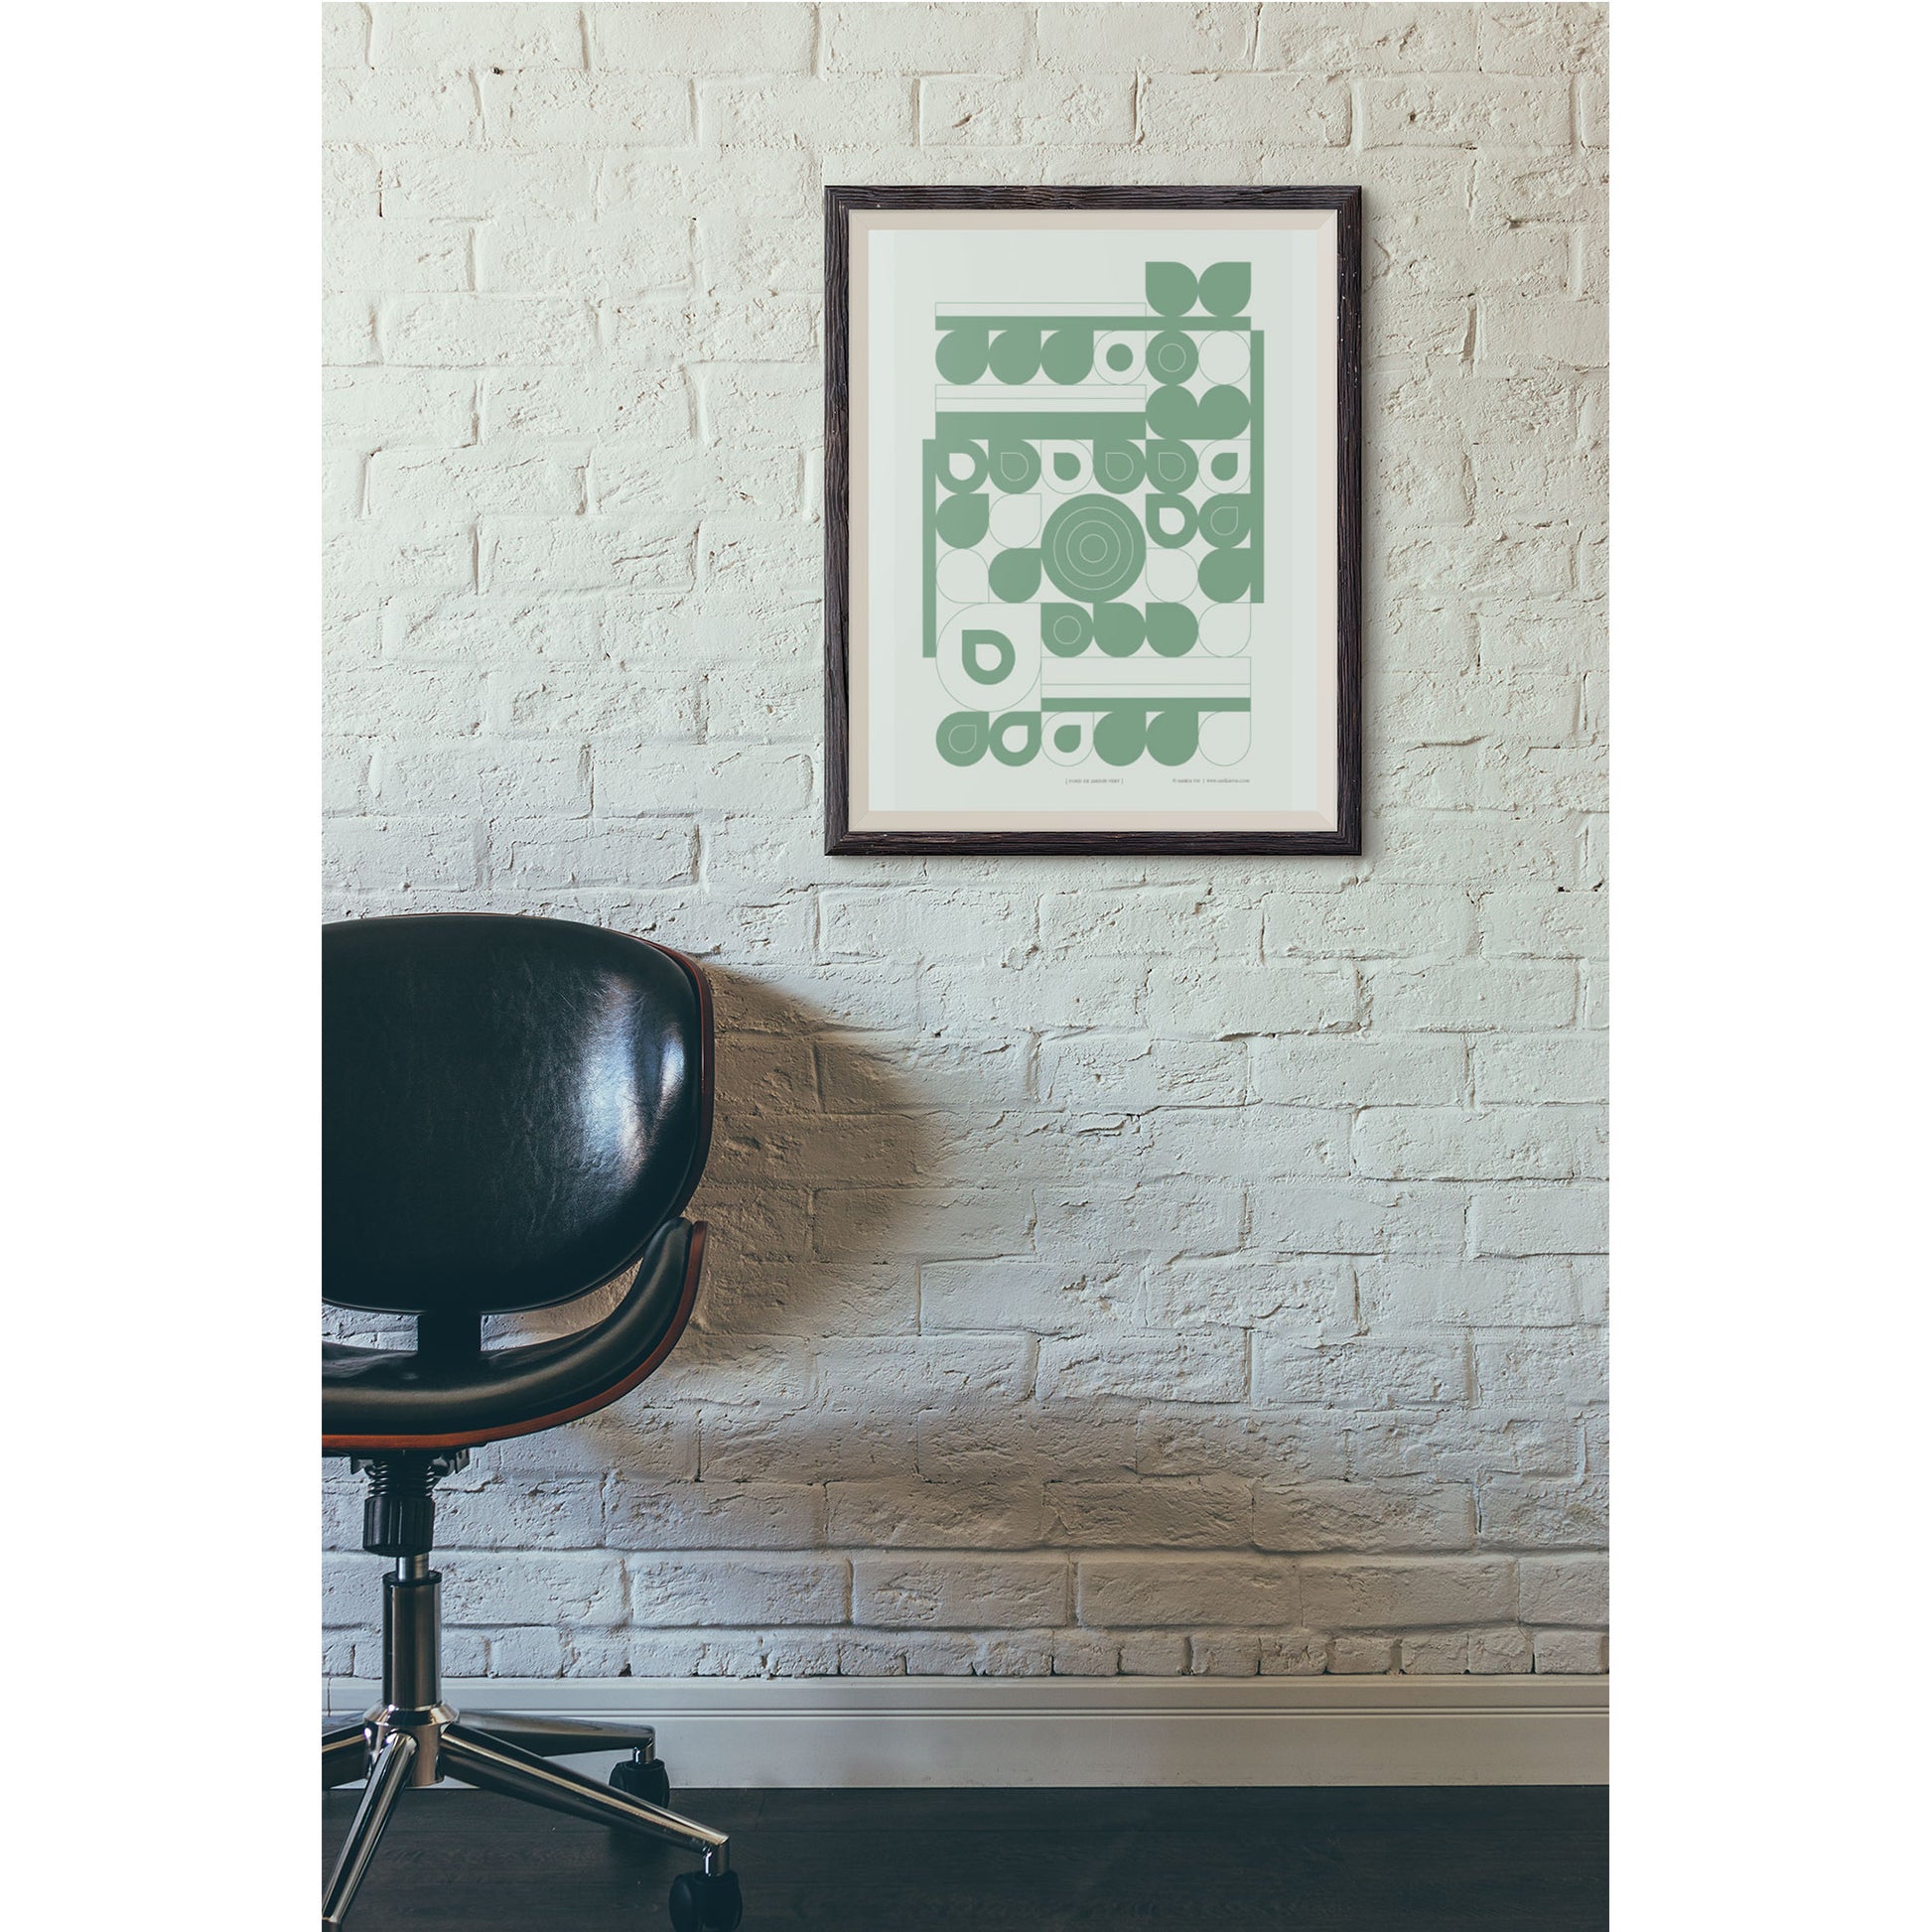 Productafbeelding, poster "fond de jardin vert", foto impressie 3, ingelijst aan een sfeervolle wand met een moderne bureaustoel